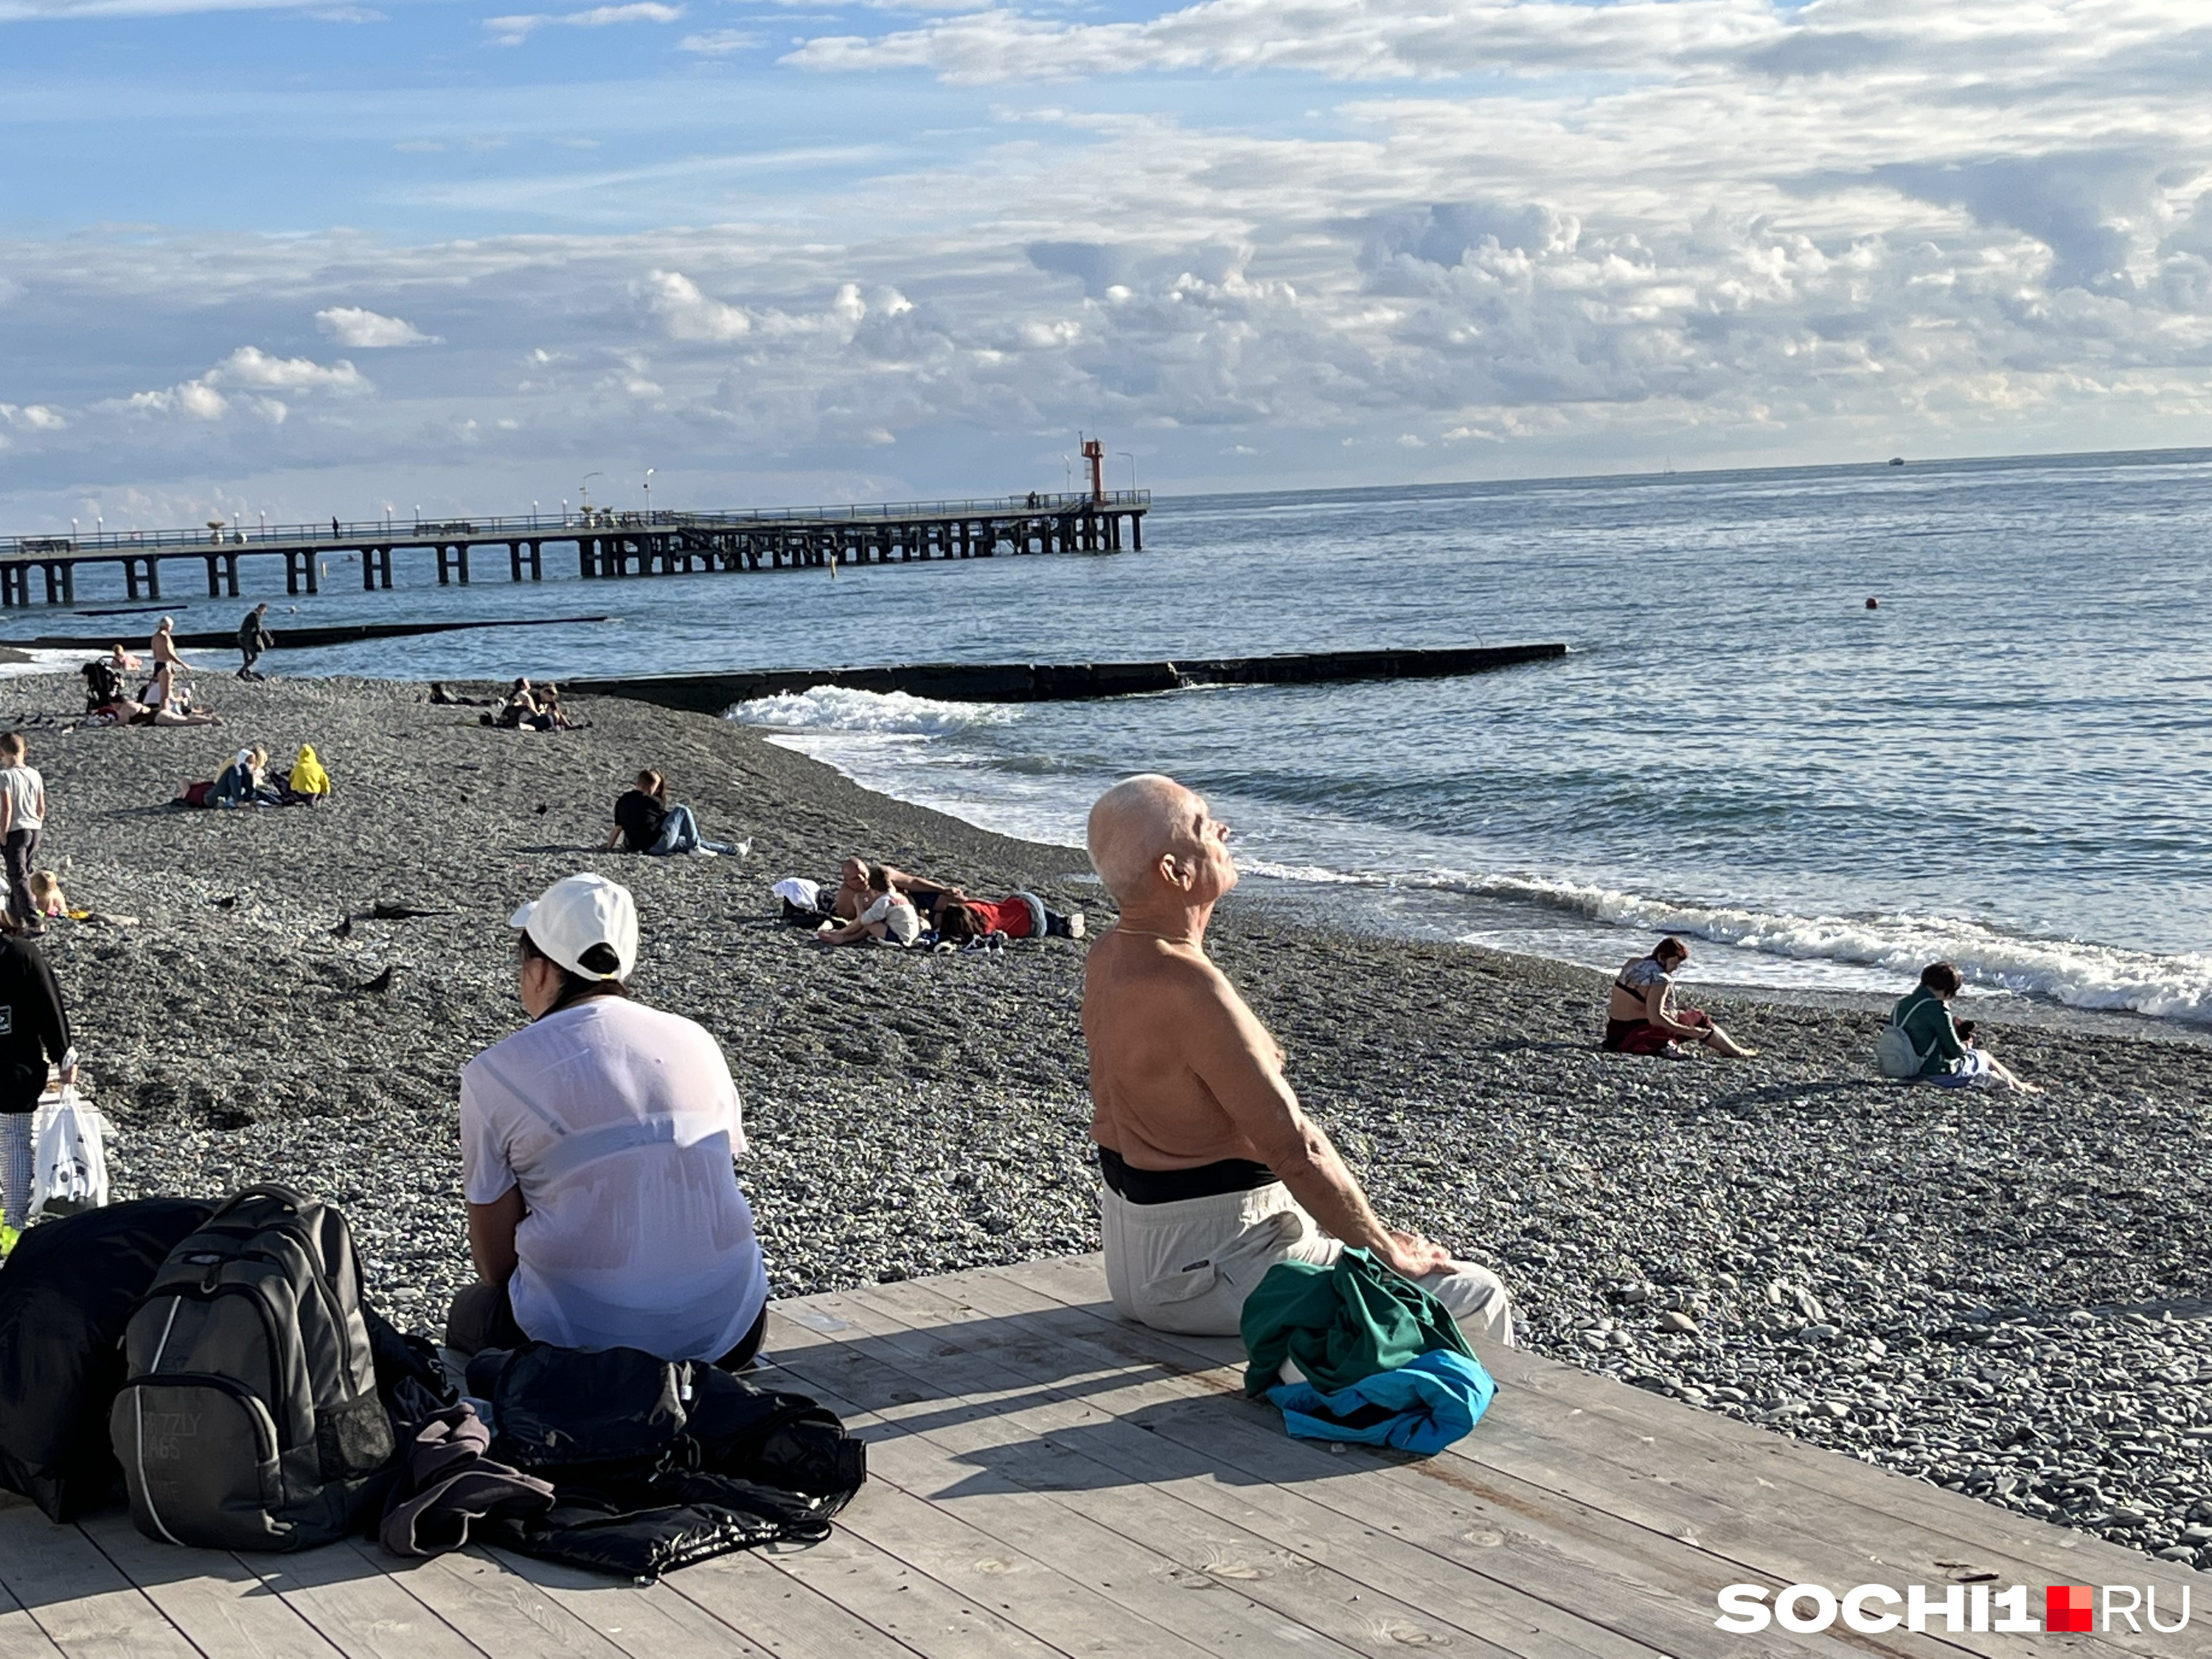 Погода в Сочи может наладиться в любой день — и снова можно загорать на пляже